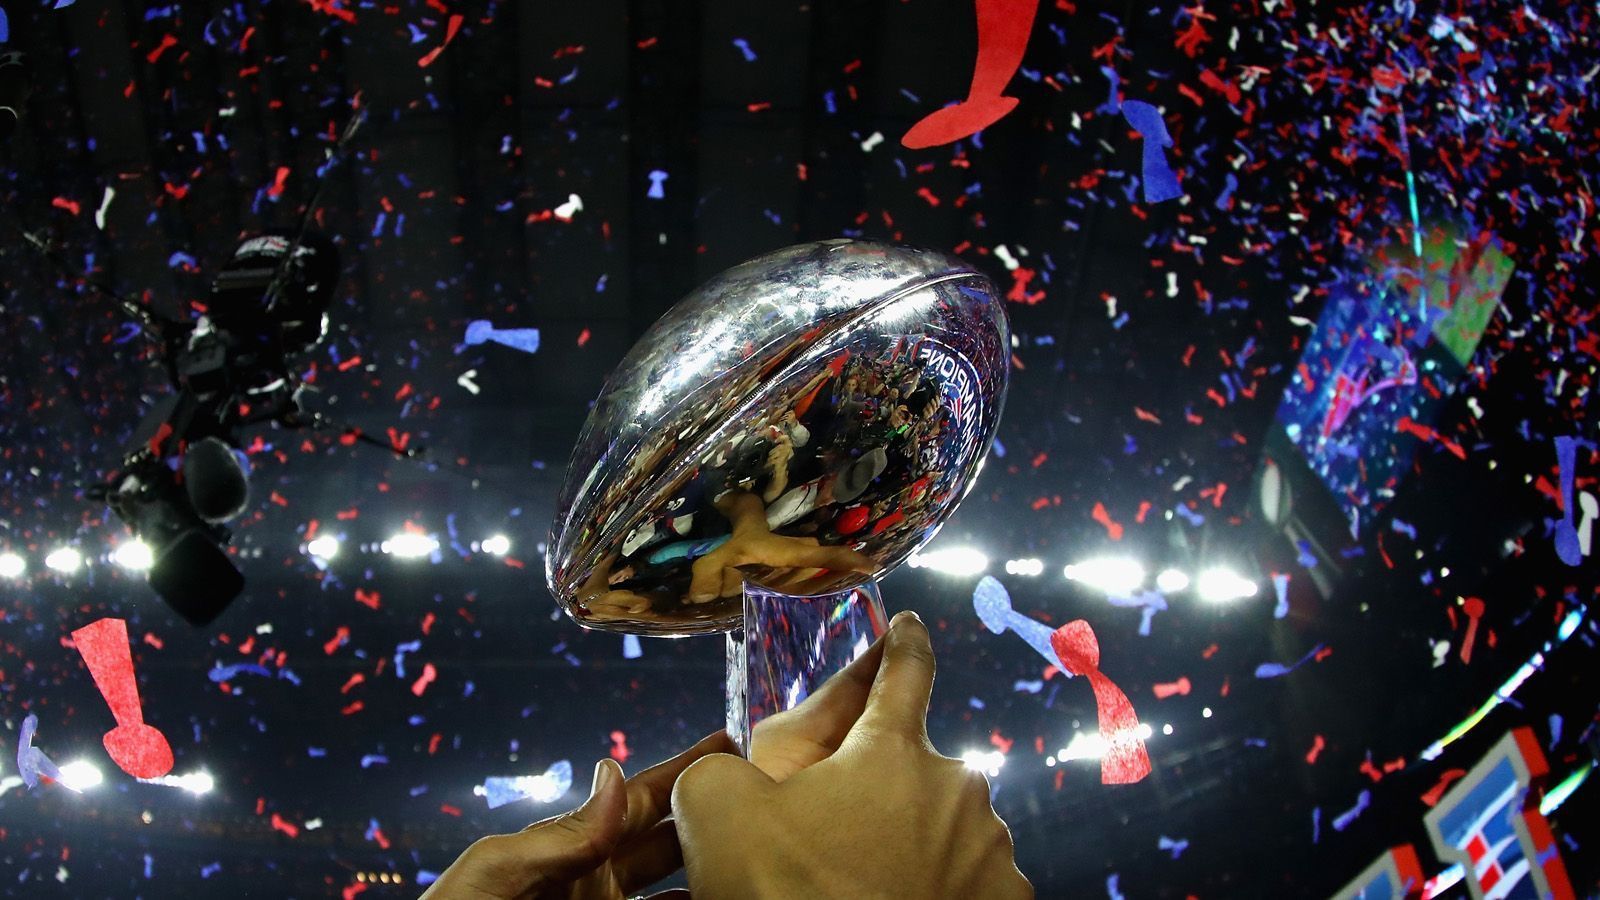 
                <strong>Angeberwissen zum Super Bowl LIII</strong><br>
                Es ist das größte Einzelsportereignis der Welt. Am 3. Februar 2019 heißt es New England Patriots gegen die Los Angeles Rams. Alle Augen sind auf das Duell zwischen den Quarterbacks Tom Brady und Jared Goff gerichtet. Damit ihr perfekt vorbereitet seid, hat ran.de Angeberwissen zur 53. Ausgabe des Super Bowls gesammelt.
              